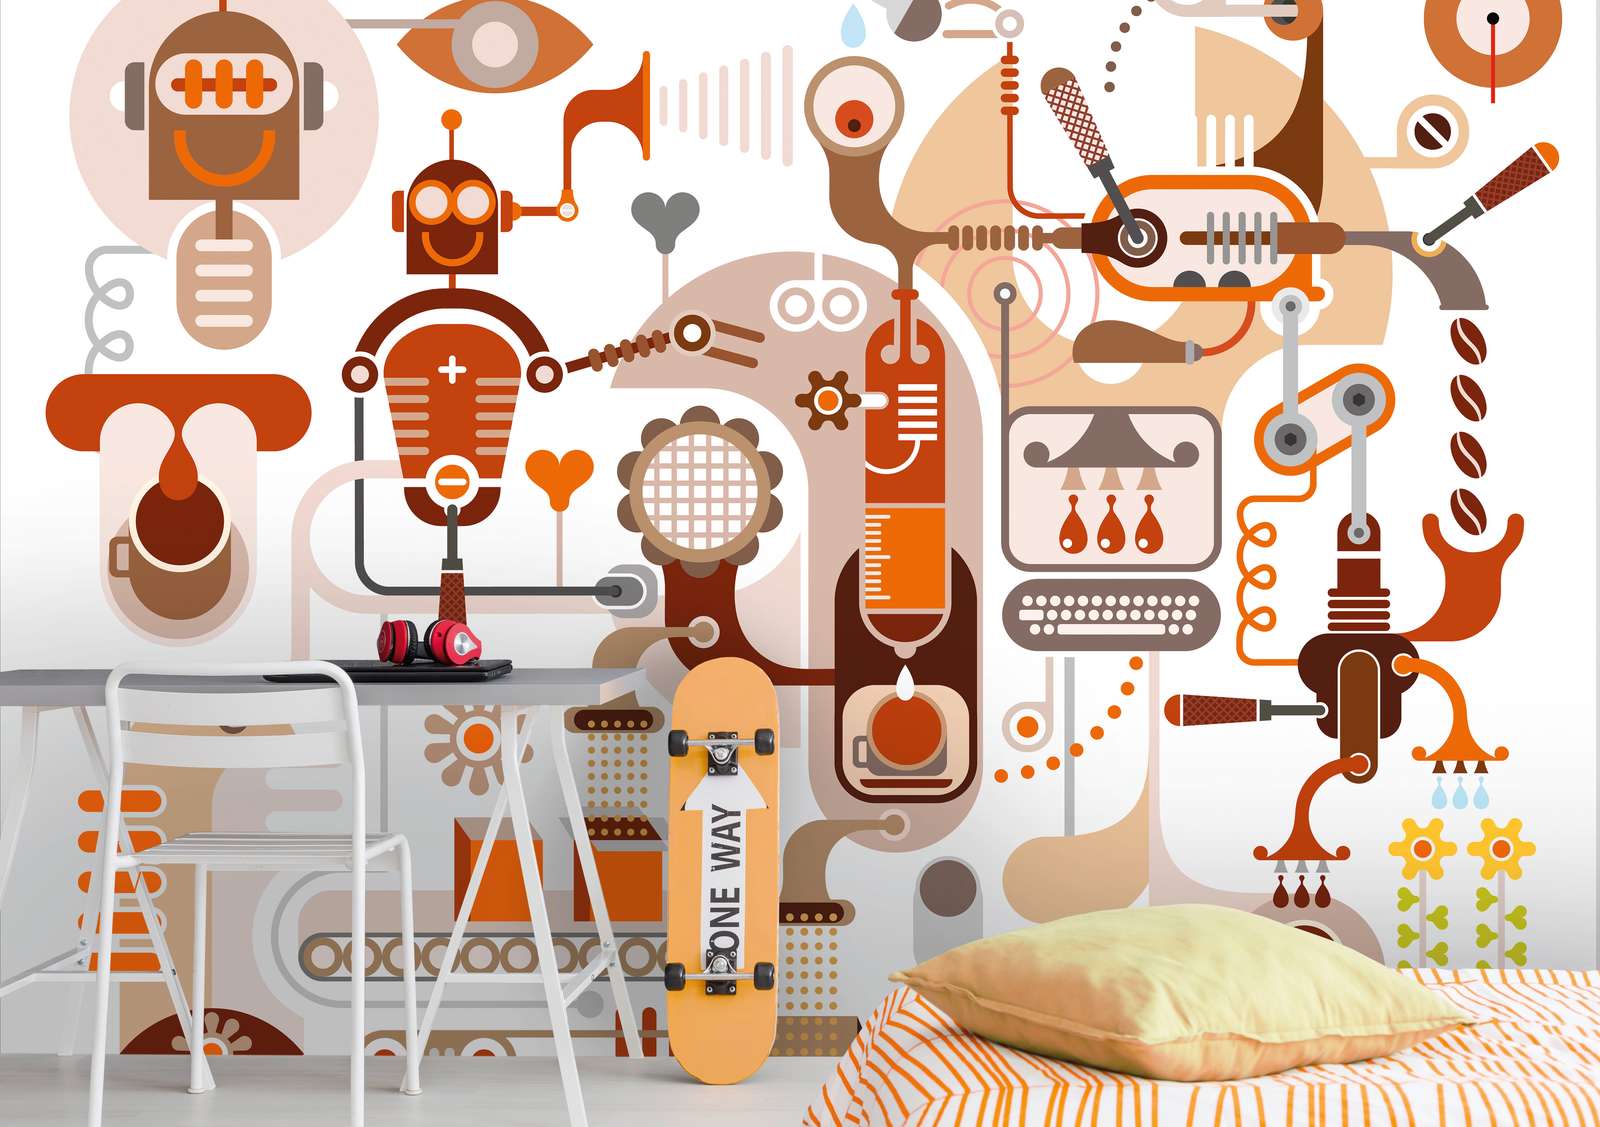             Carta da parati robot e macchine per la camera dei bambini - Marrone, arancione, bianco
        